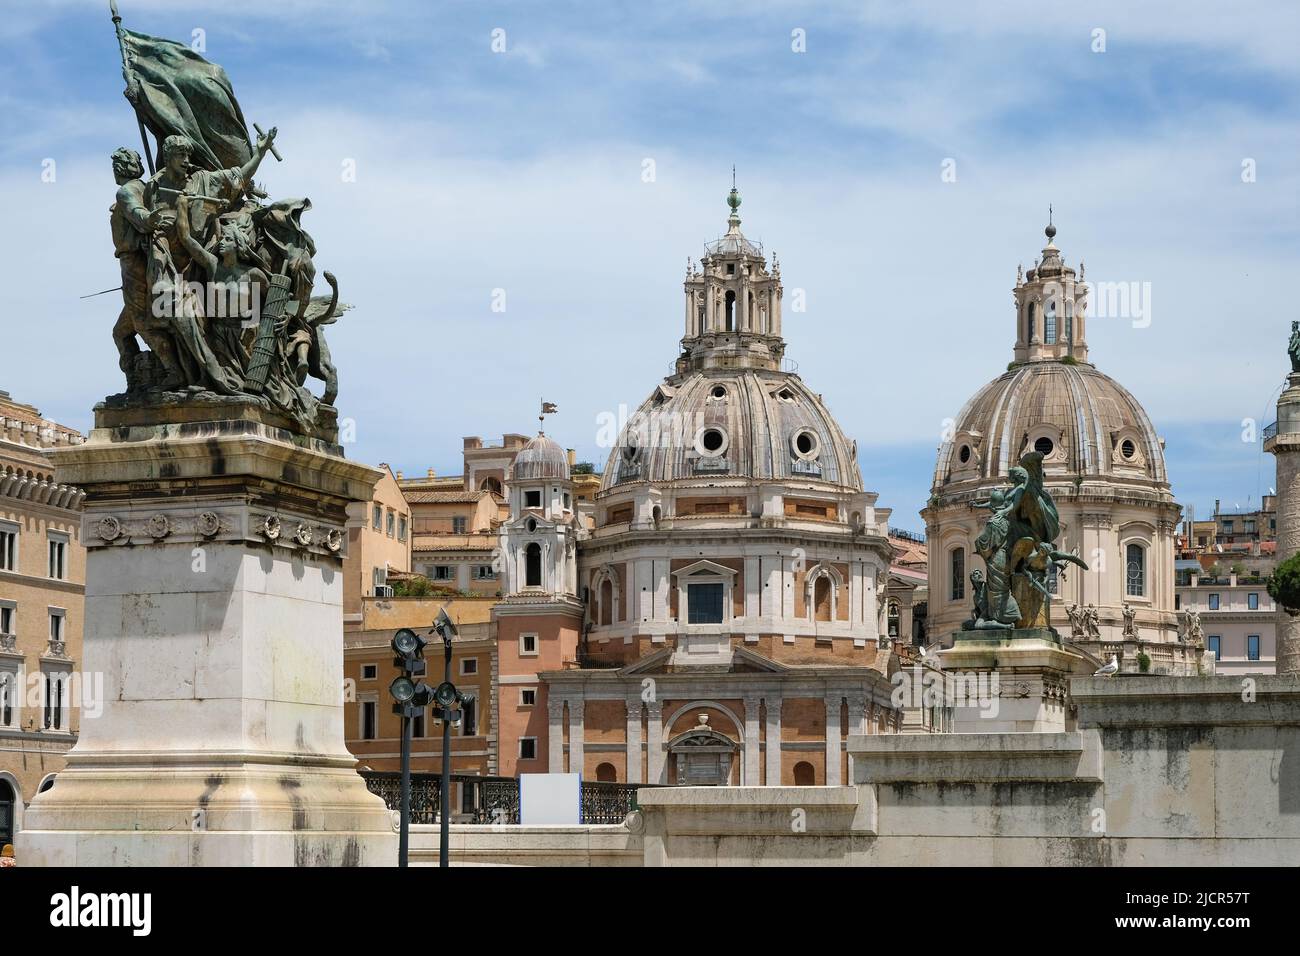 Monument Vittoriano and the majestic domes of Santa Maria di Loreto and Santissima Nome di Maria at Piazza Venezia in Rome, Italy. Stock Photo